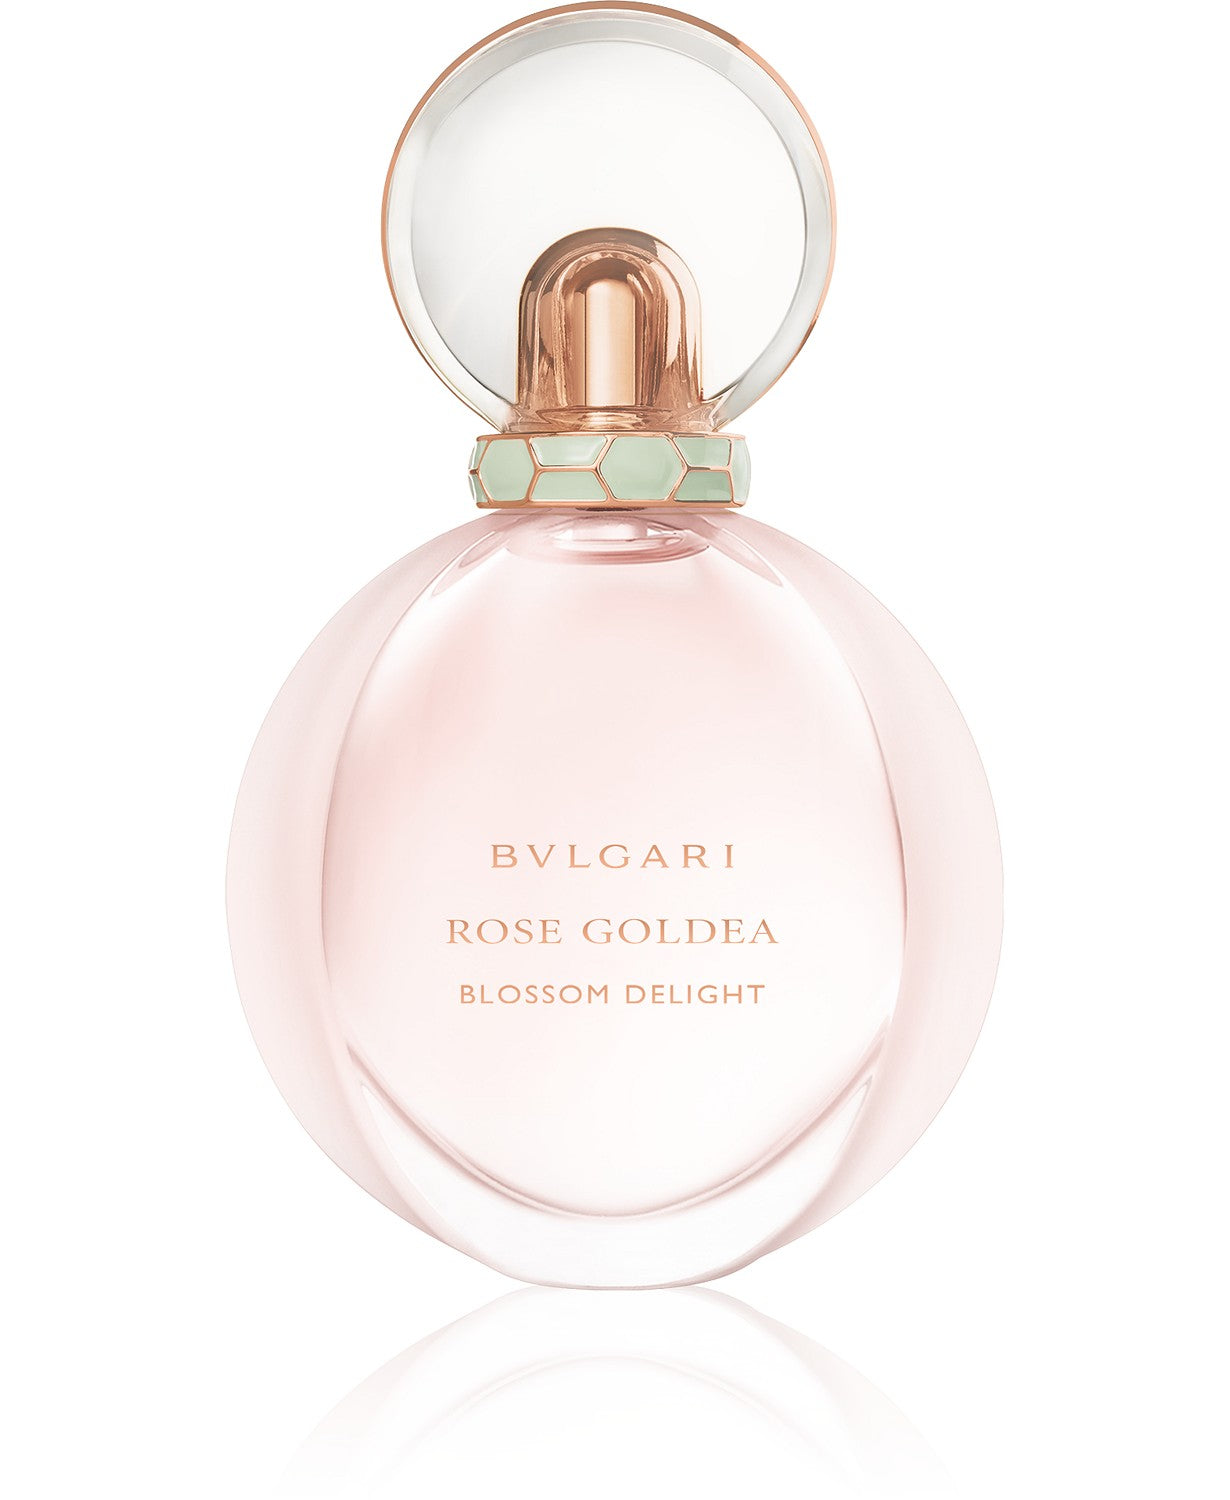 BVLGARI Rose Goldea Blossom Delight 2.5 oz Eau De Parfum Spray